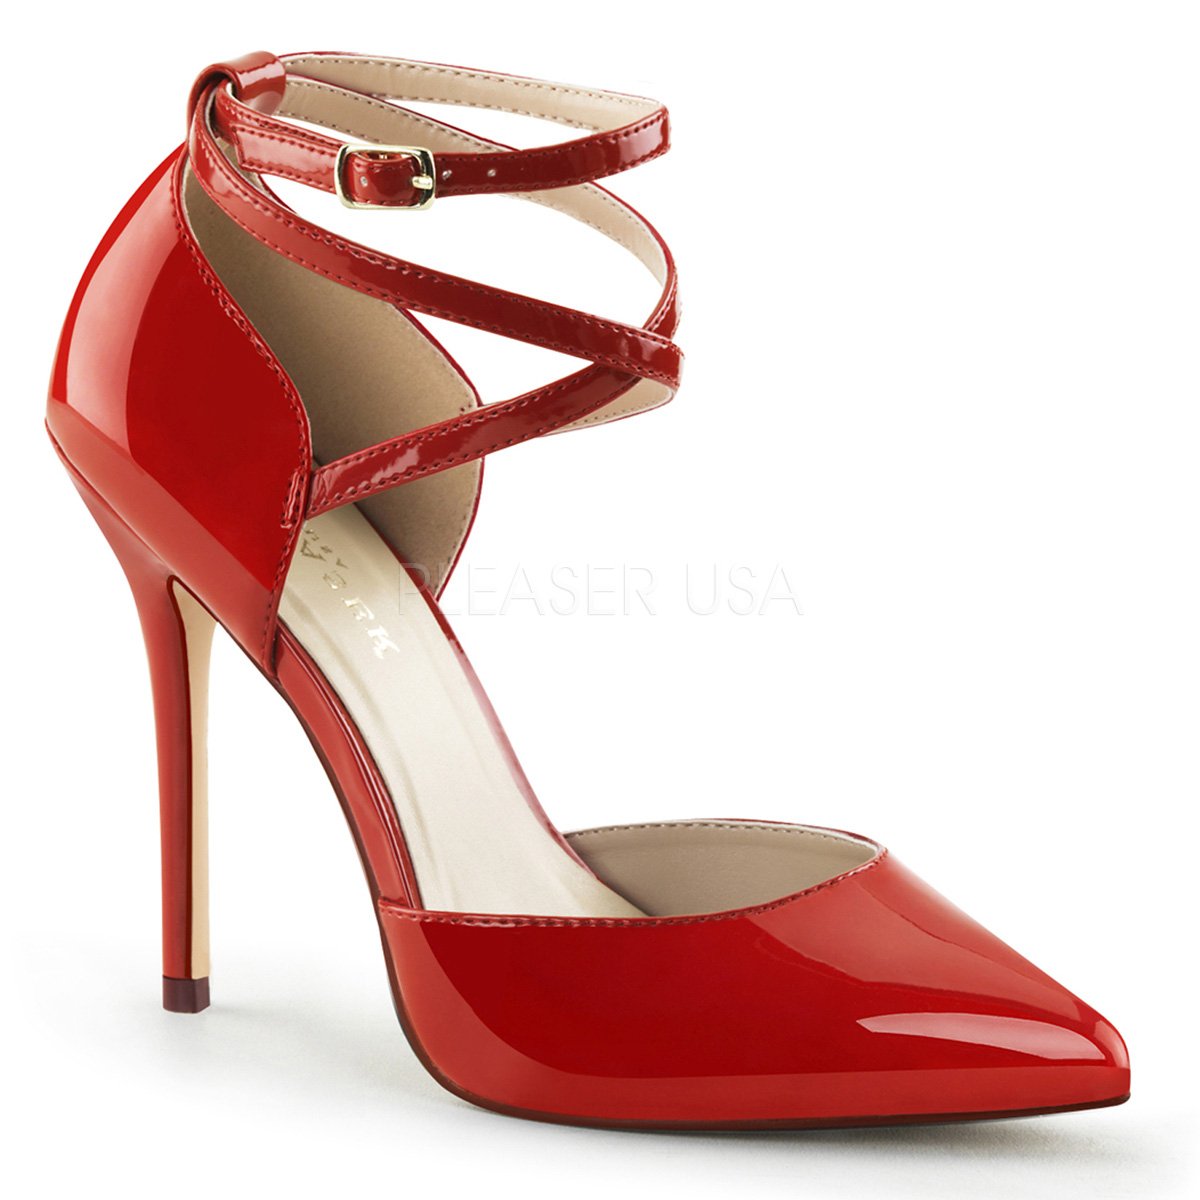 Pumps Nine West Ladies Grey 3 inch heels Casual Career Work Round Toe Two  Tone | eBay